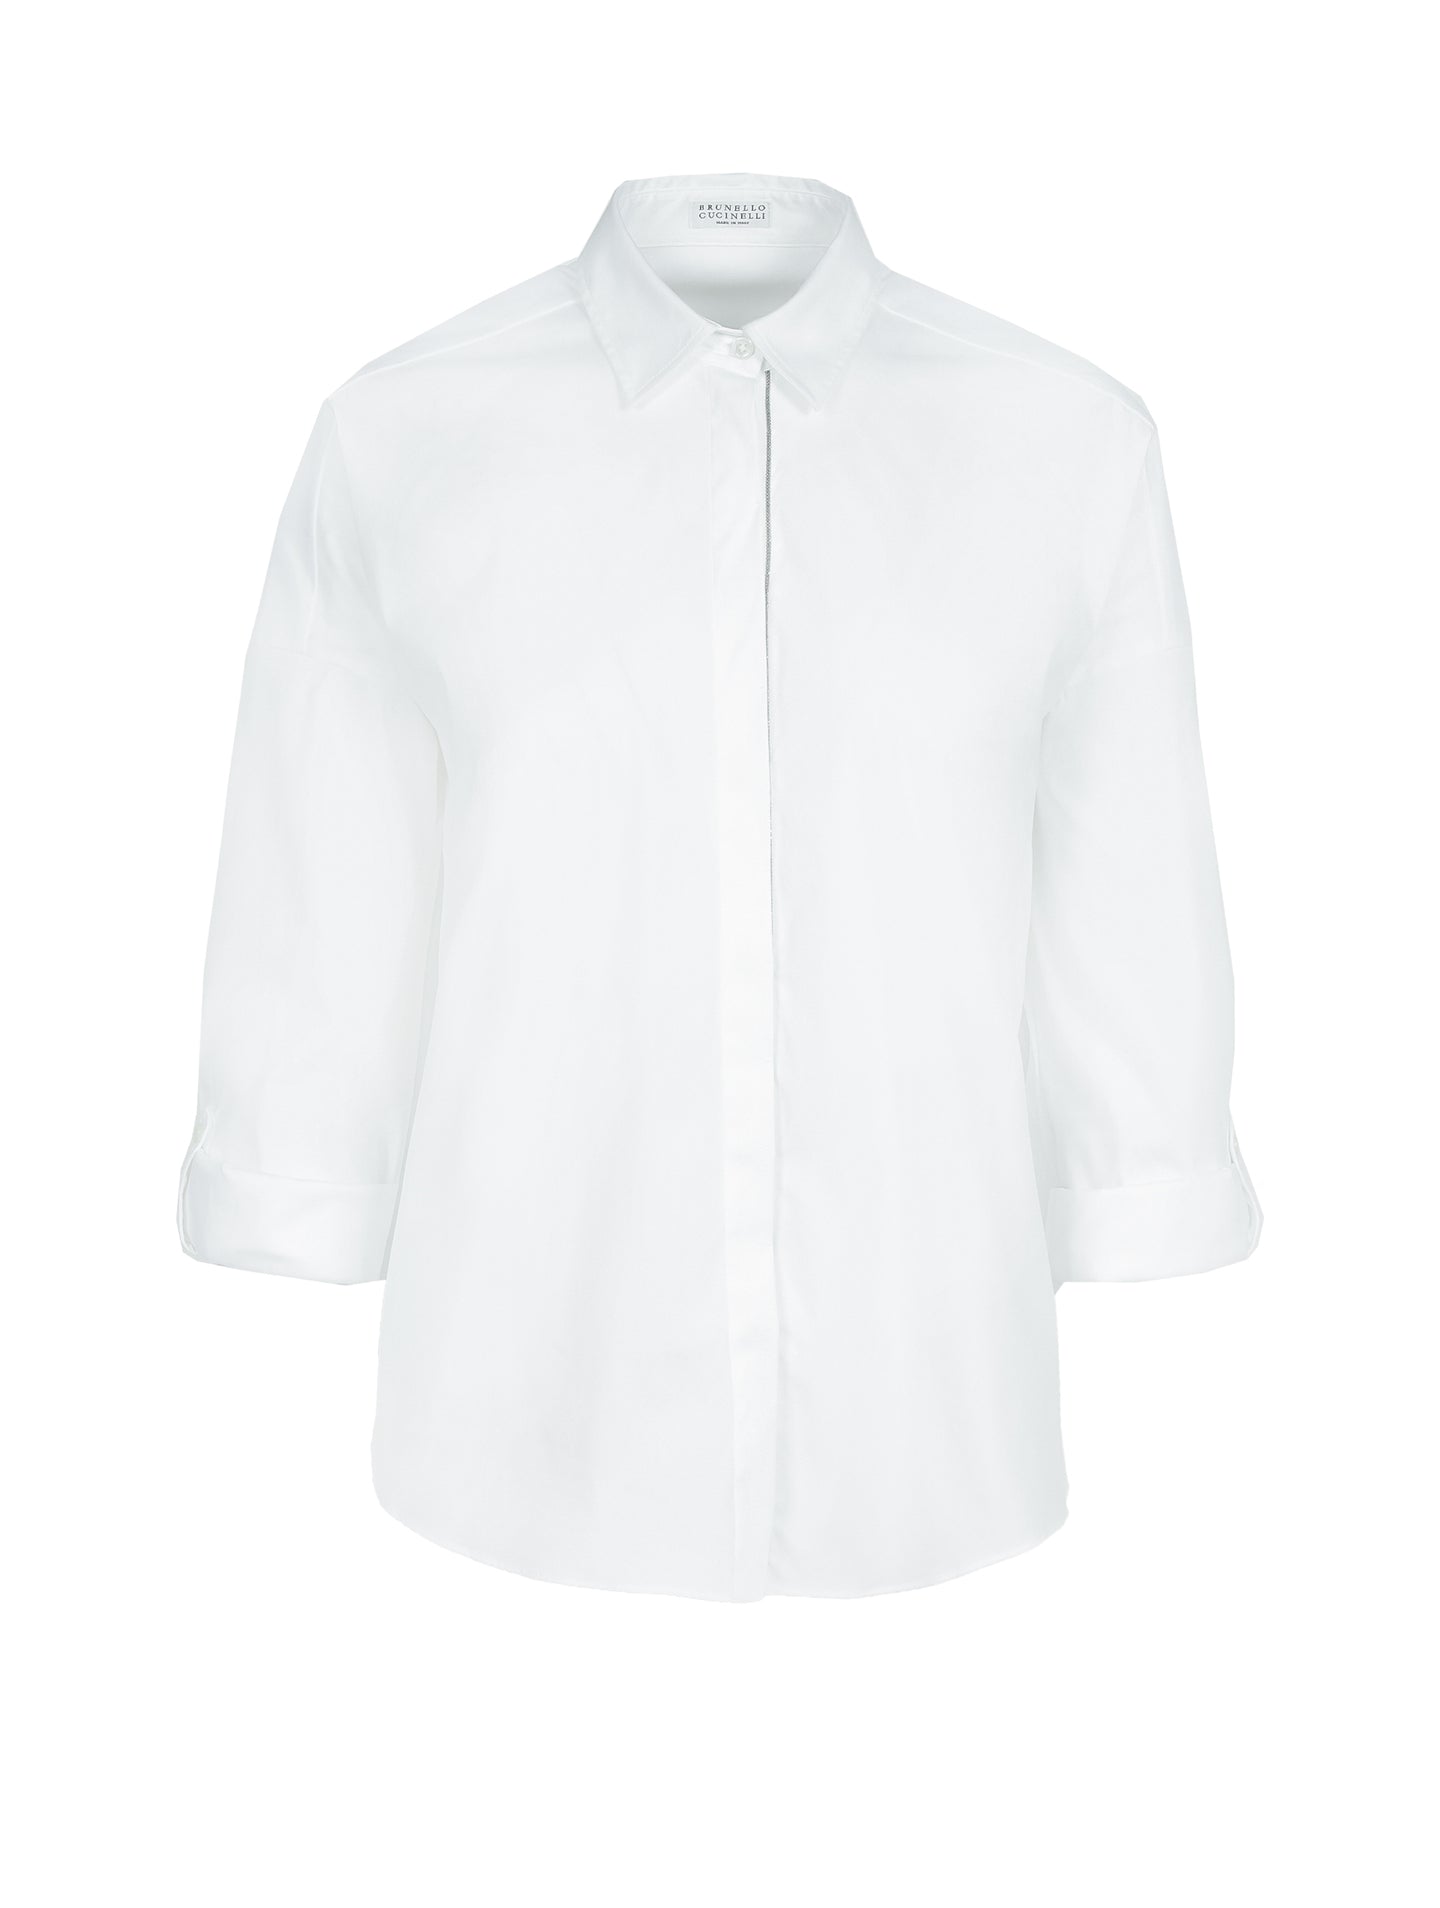 Brunello Cucinelli Hemd mit Nad in Weiß